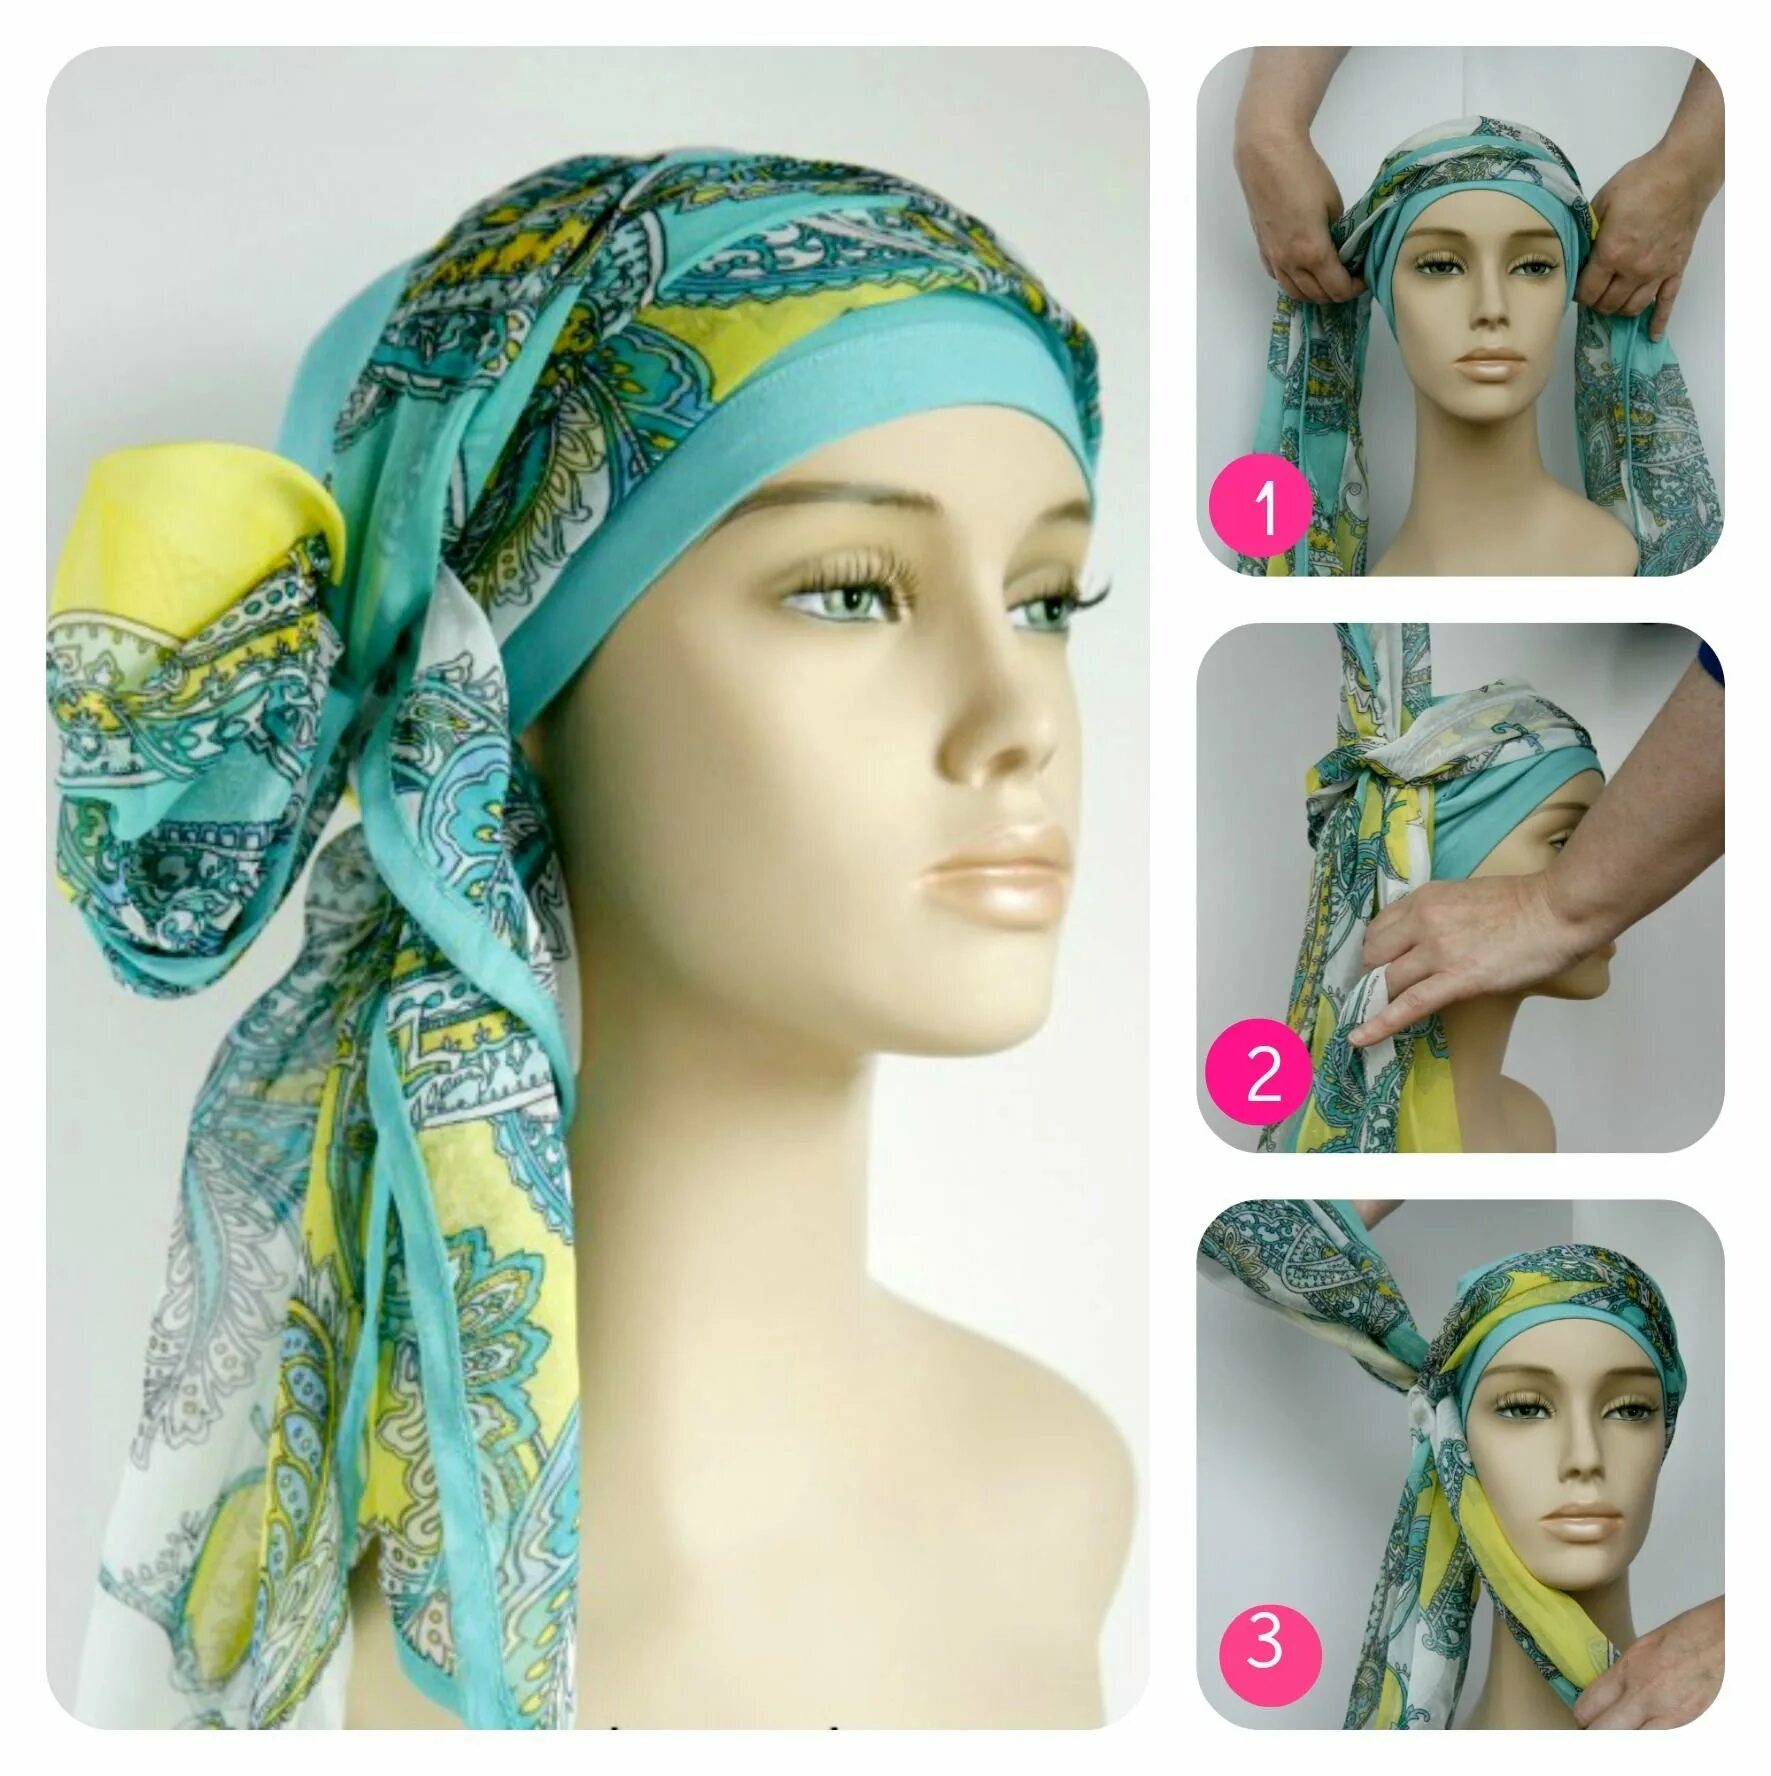 Как красиво завязывать платок на голове весной